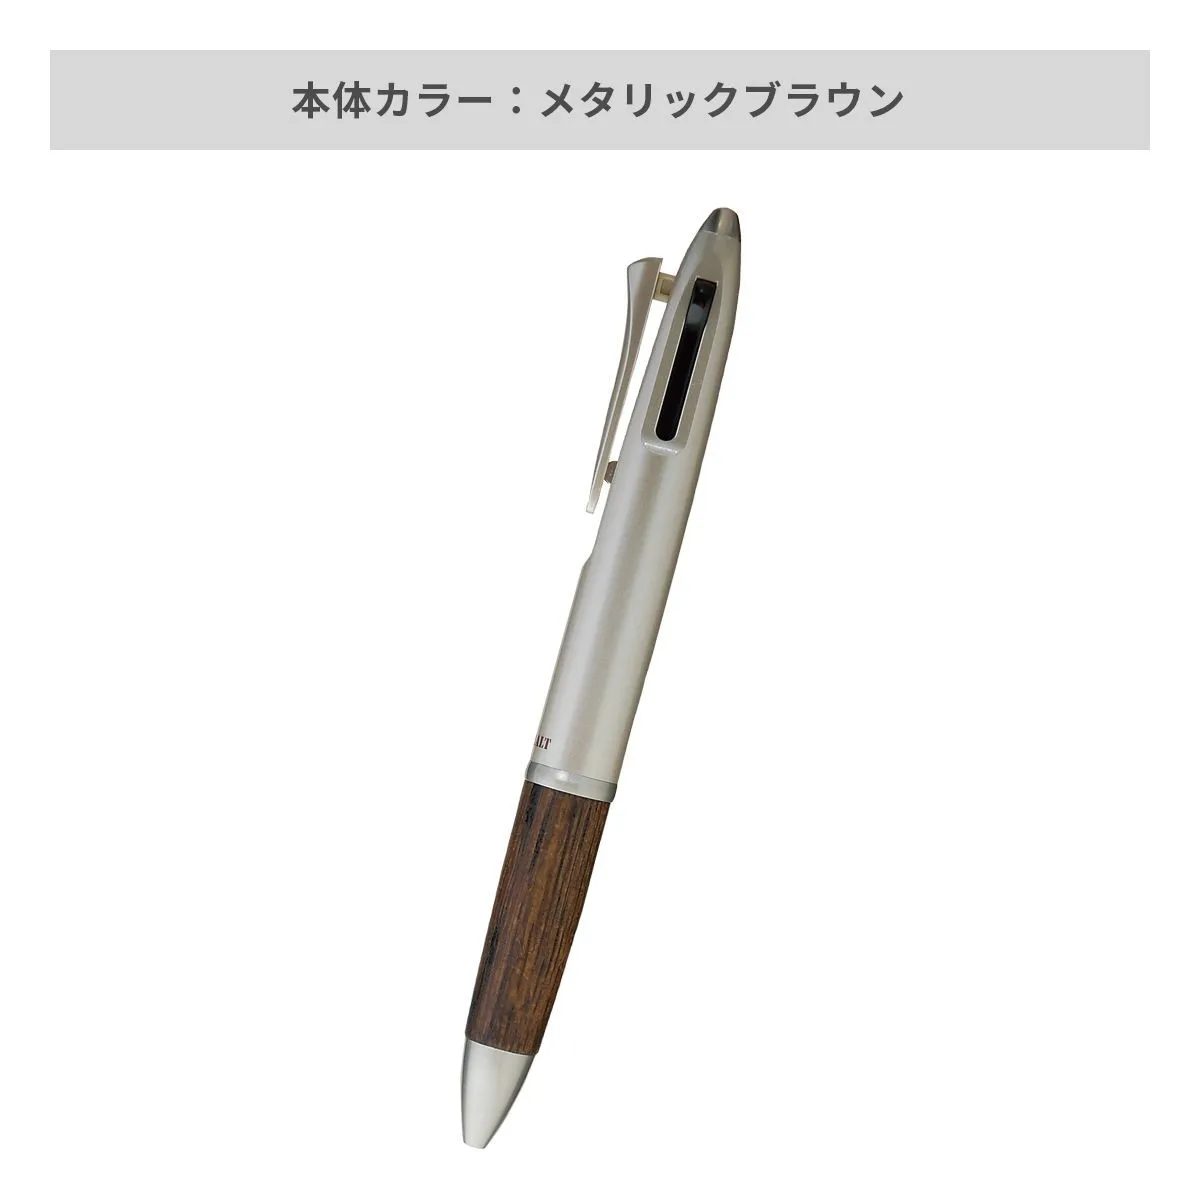 三菱鉛筆 ピュアモルト3機能ペン 0.7mm【多機能ペン / パッド印刷】 画像6